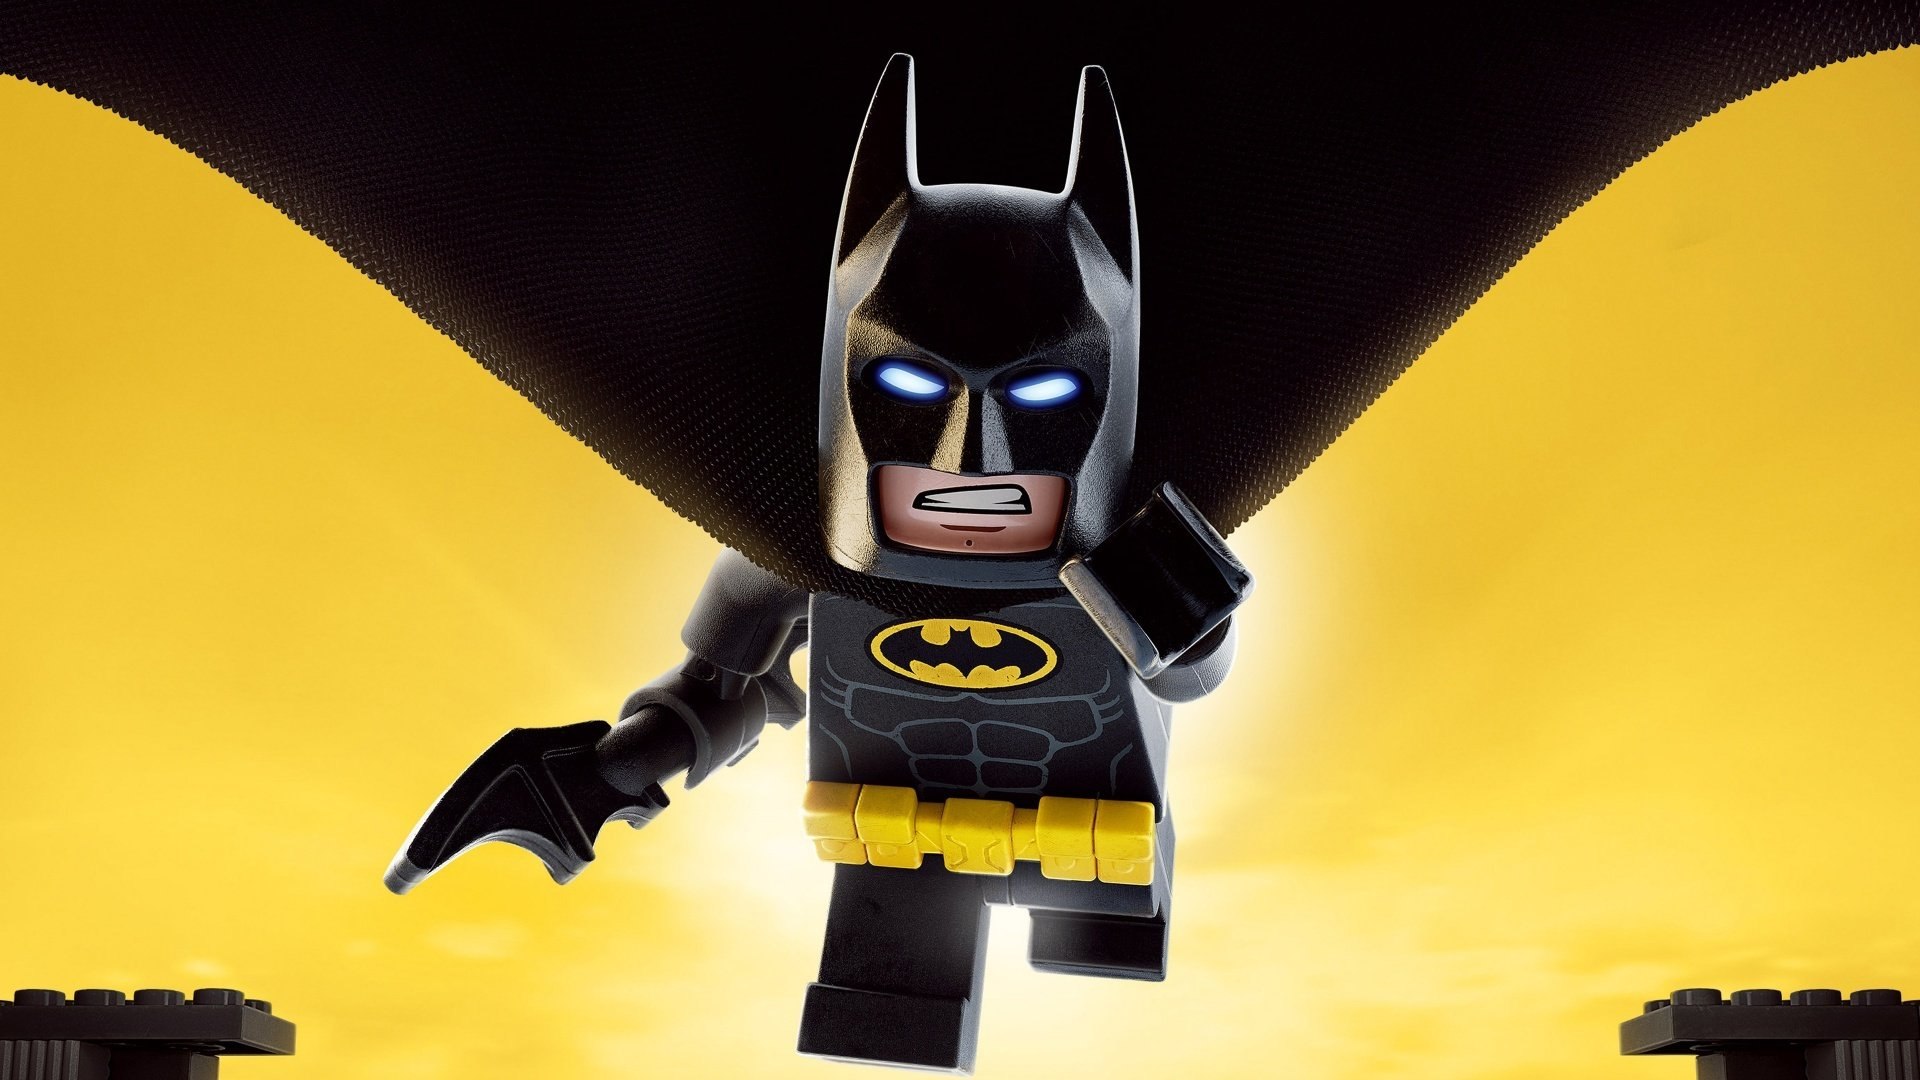 Batman: La Lego película completa en español - Video Dailymotion